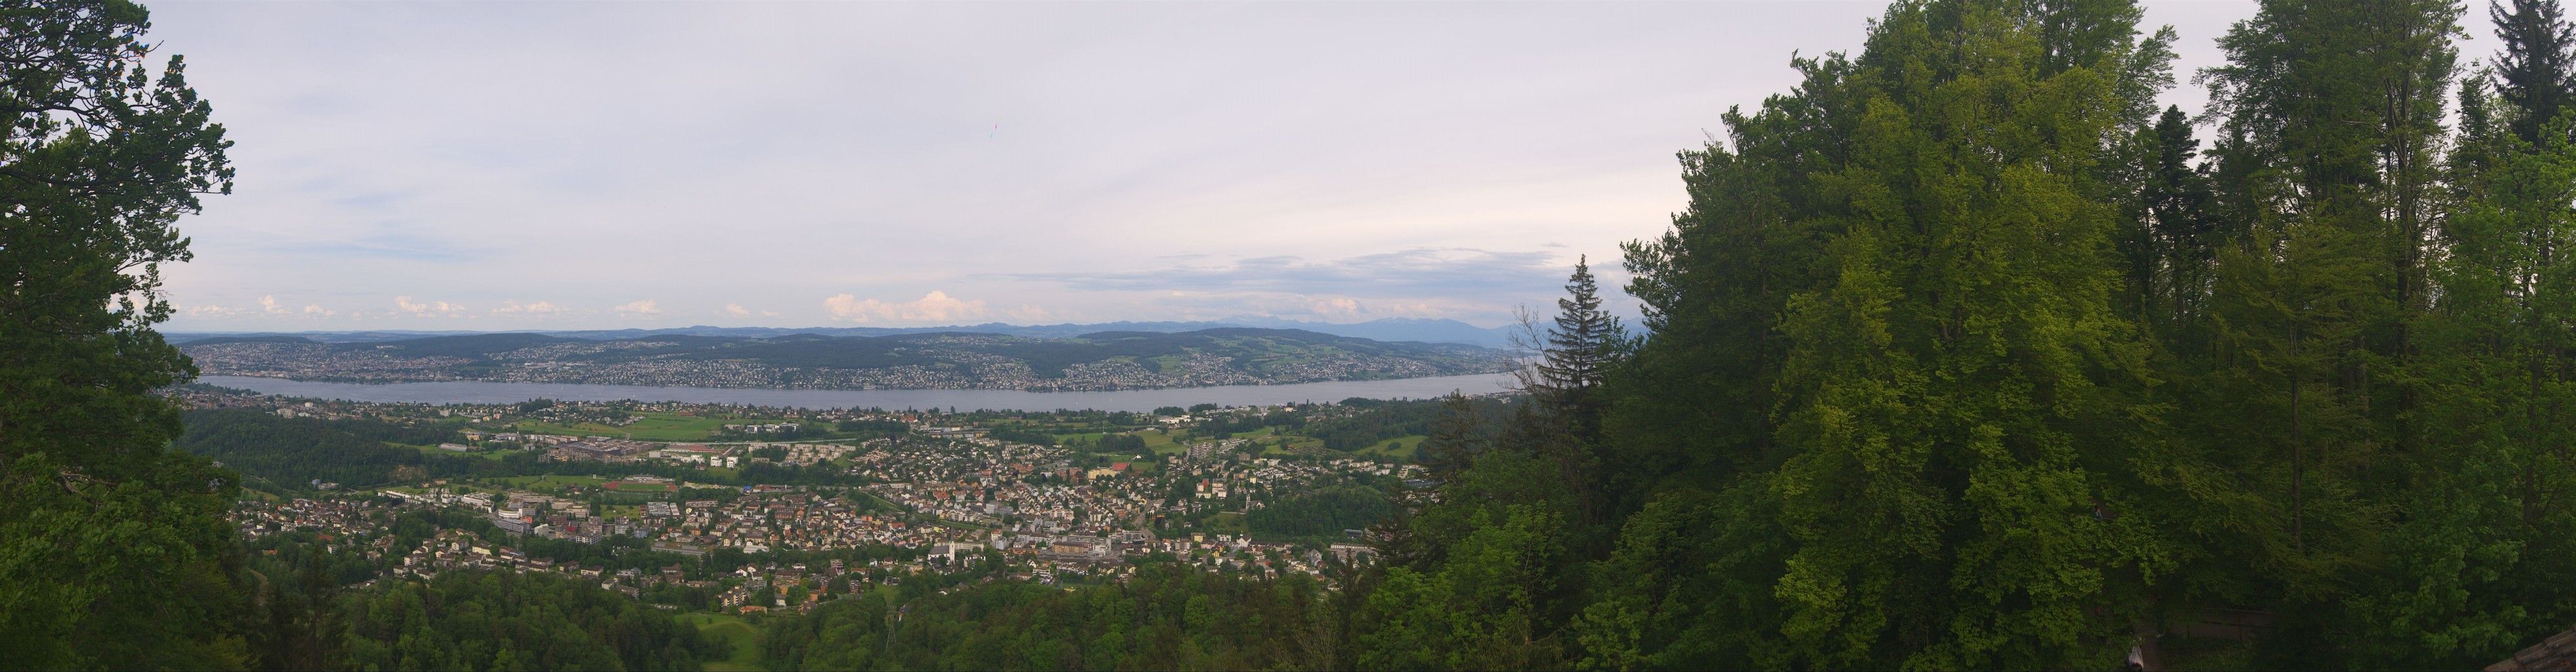 Stallikon: Adliswil - Zollikon - Küsnacht - Erlenbach - Zürich - Herrliberg - Horgen - Zürichsee